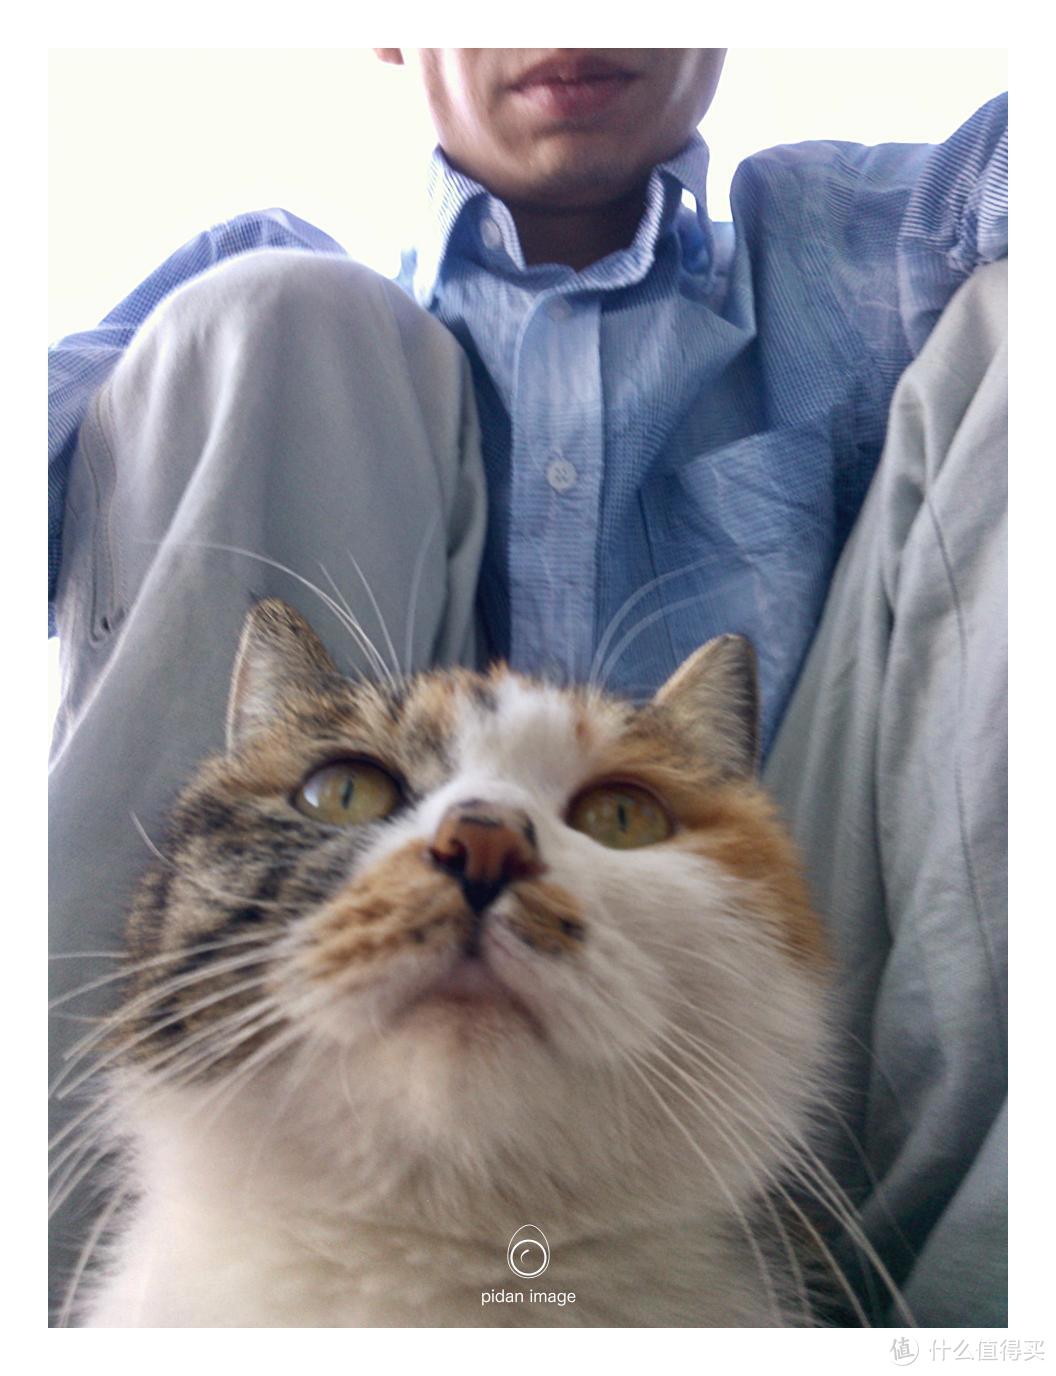 偶遇一只粘人的猫，它不怕手机，换成相机可能就吓跑了。这个距离和视角也是手机的优势（Nokia Lumia 610）